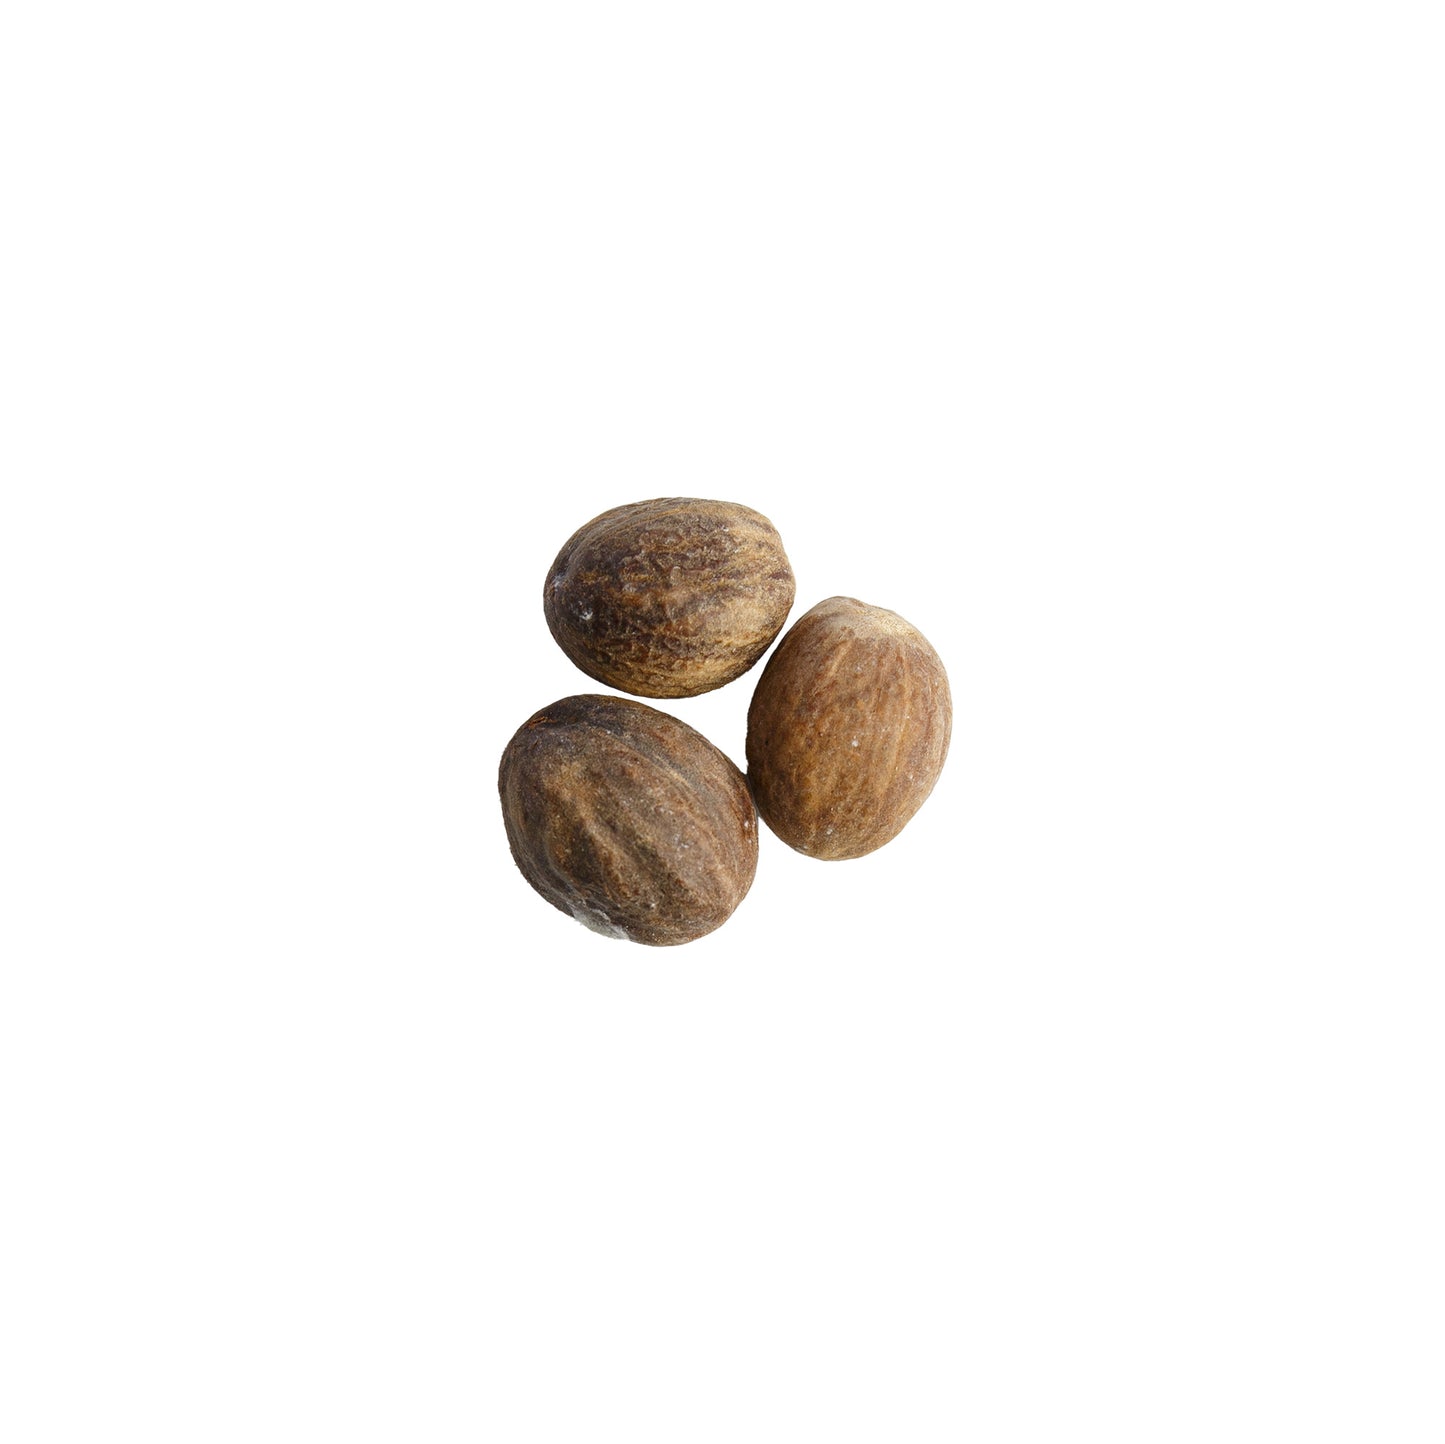 Primary Image of Nutmeg Whole